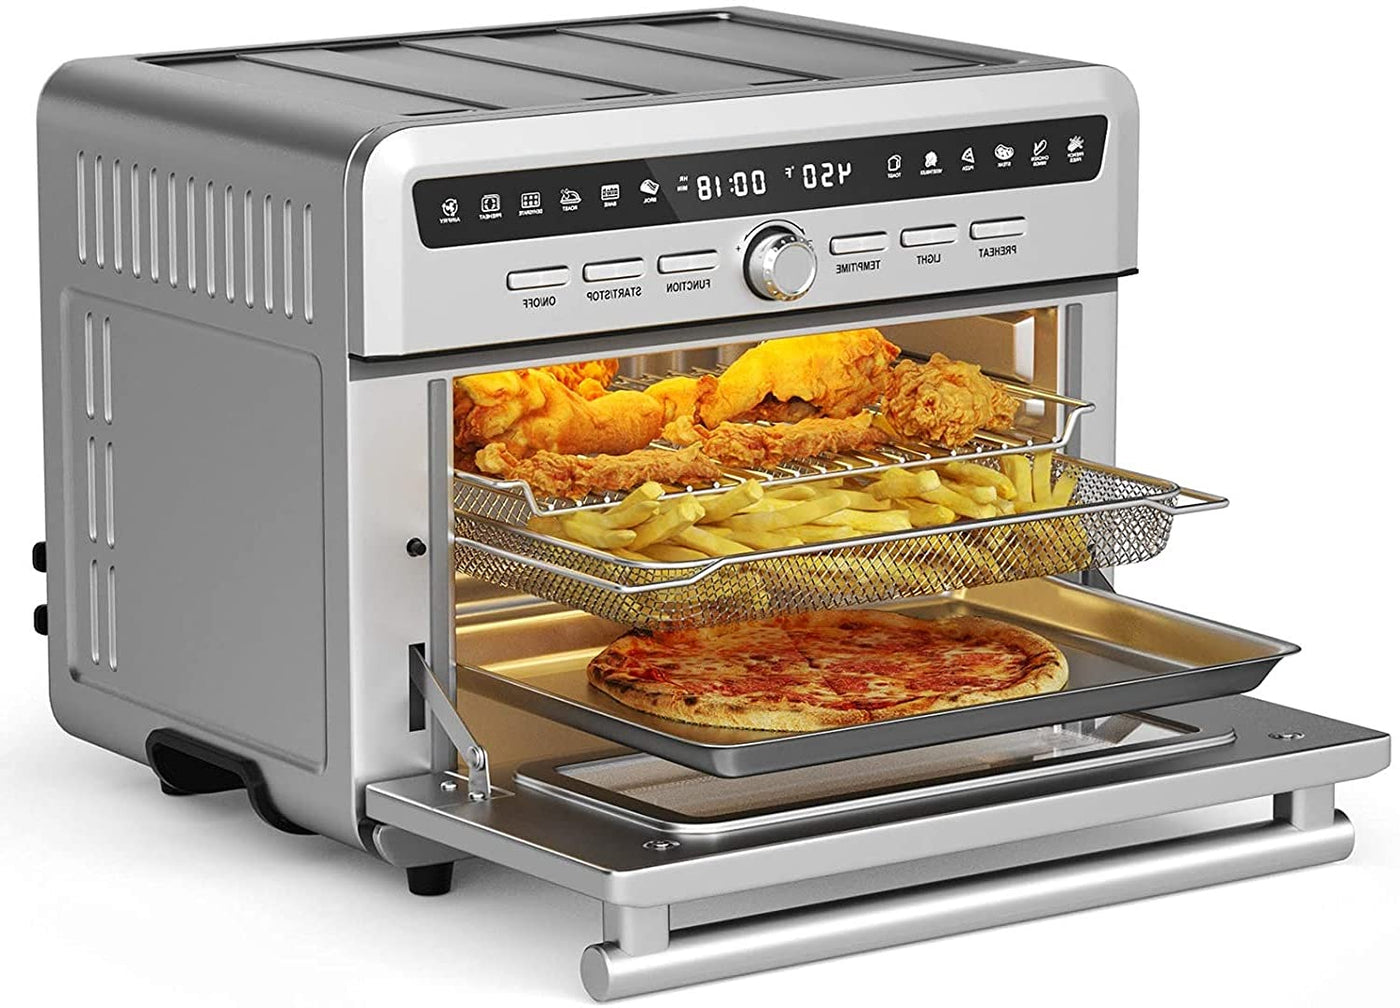 MAT EXPERT Air Fryer Oven 26.4 - Smart Tech Shopping